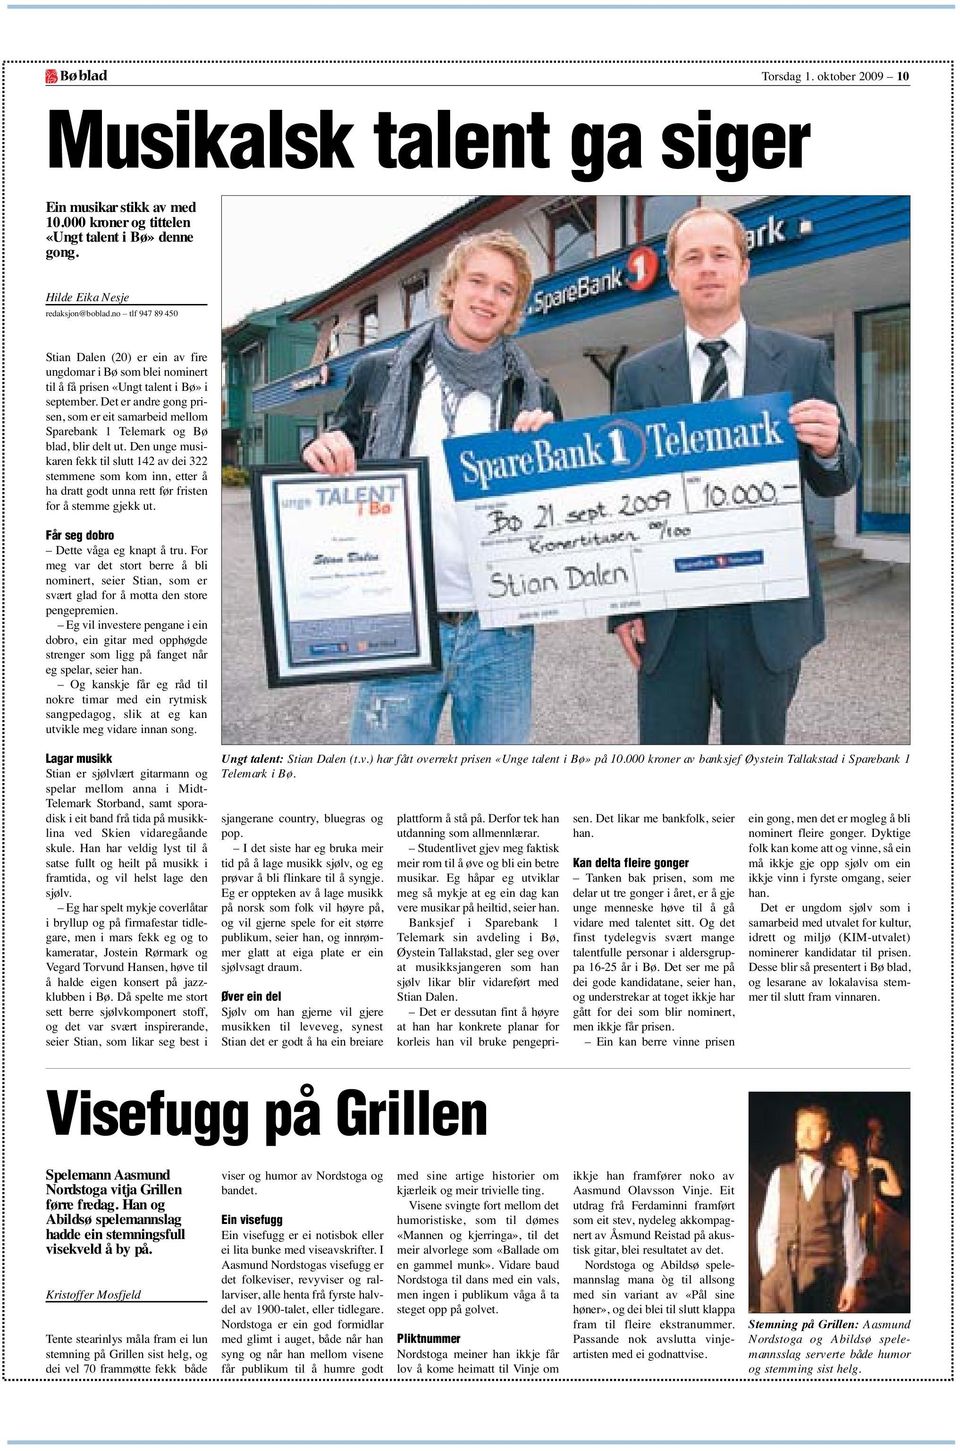 Det er andre gong prisen, som er eit samarbeid mellom Sparebank 1 Telemark og Bø blad, blir delt ut.